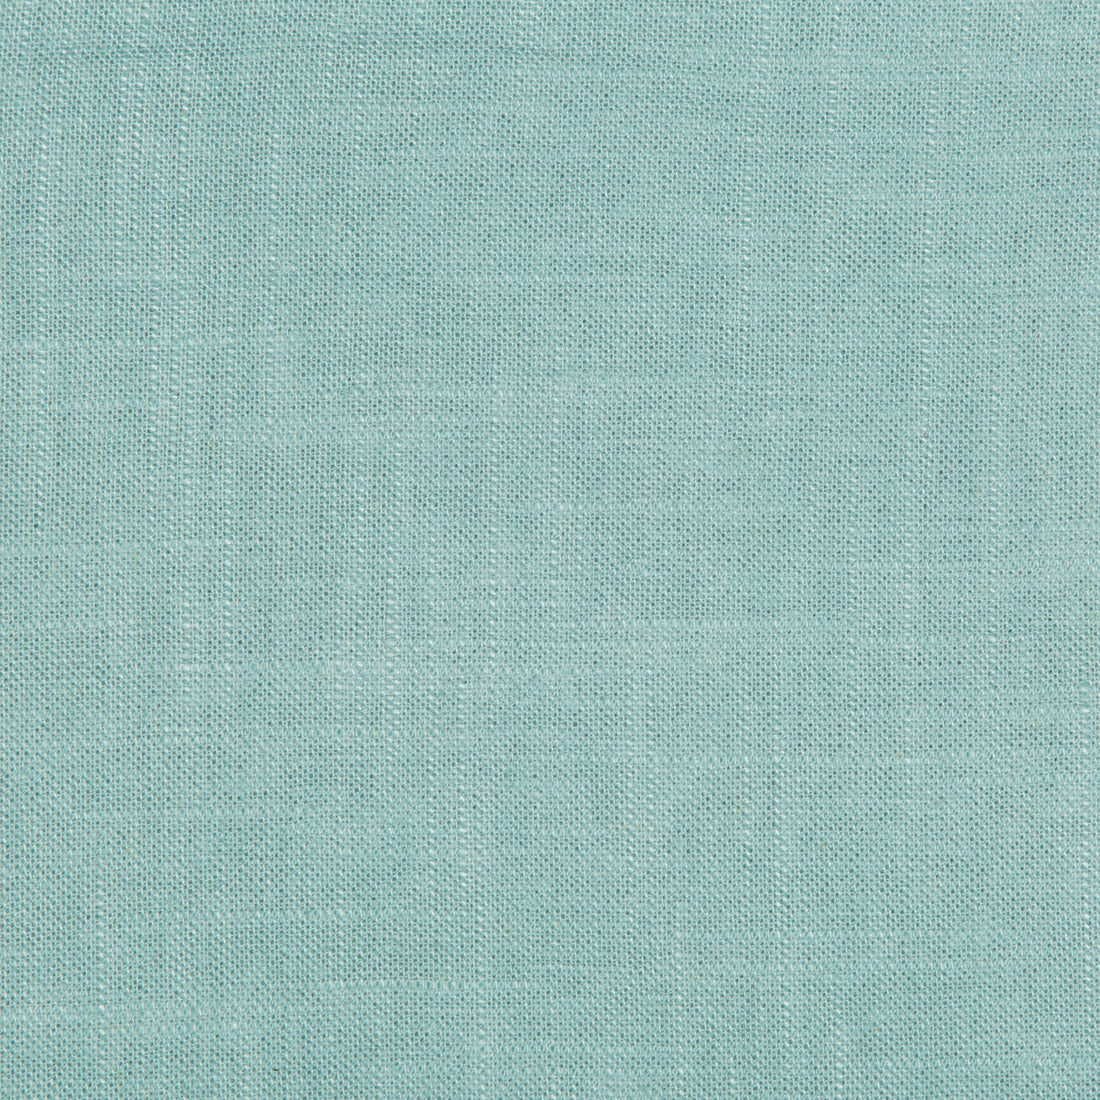 Kravet Basics fabric in 24573-511 color - pattern 24573.511.0 - by Kravet Basics